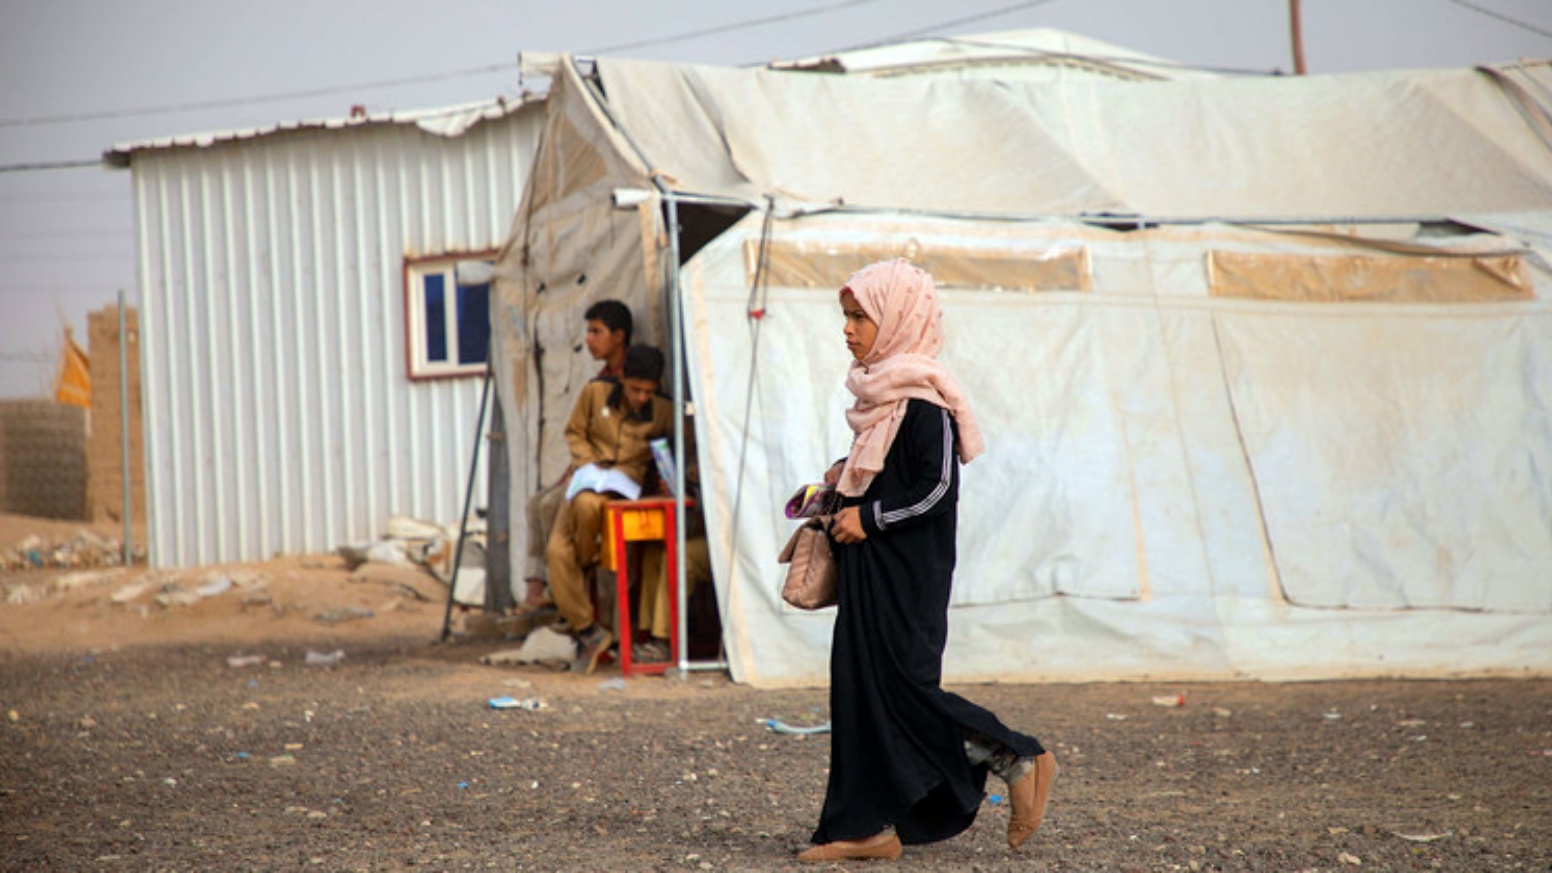 صورة لأطفال نازحين في مخيم لجوء في اليمن نشرتها منظمة الأمم المتحدة في صفحتها في تويتر.